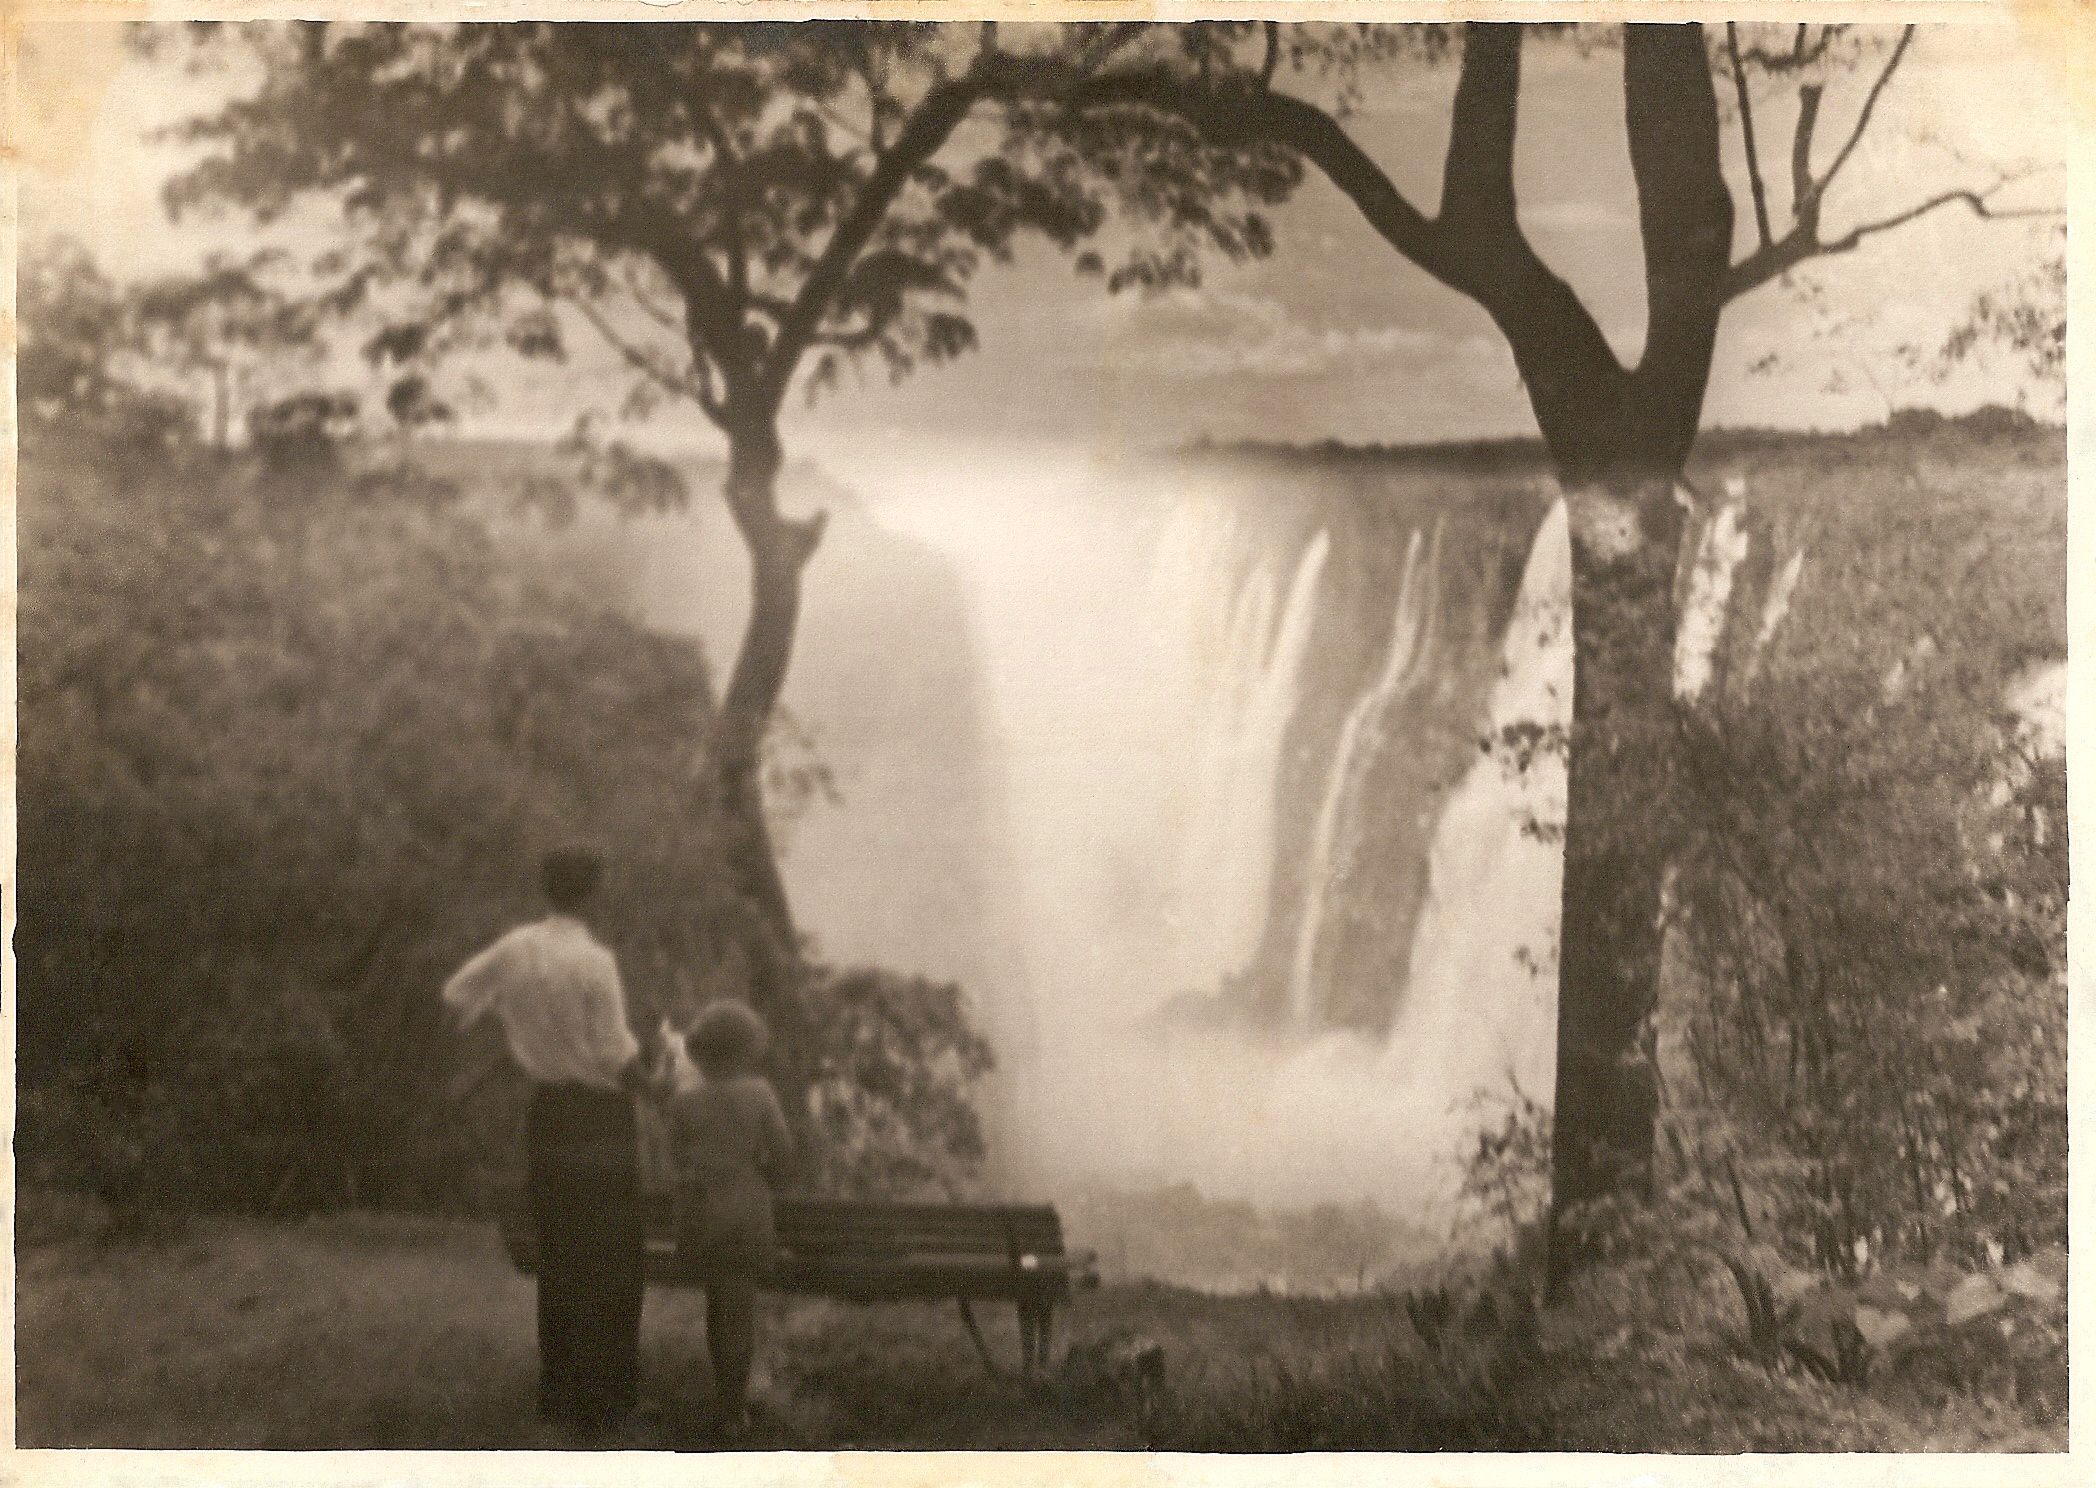  "At Victoria Falls, December 1937" 